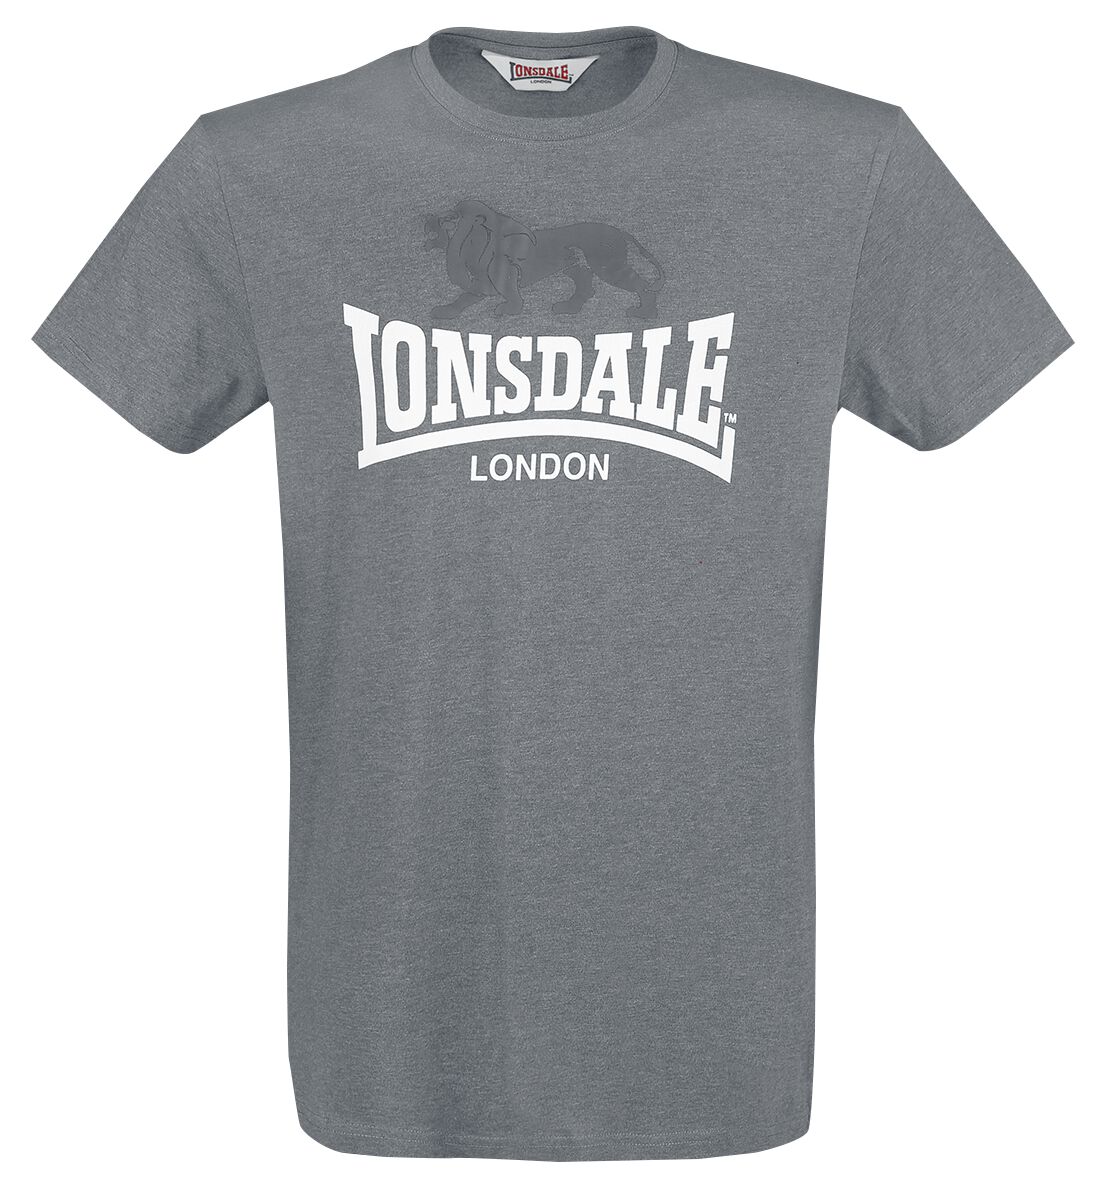 Lonsdale London T-Shirt - Gargrave - M bis 3XL - für Männer - Größe L - anthrazit